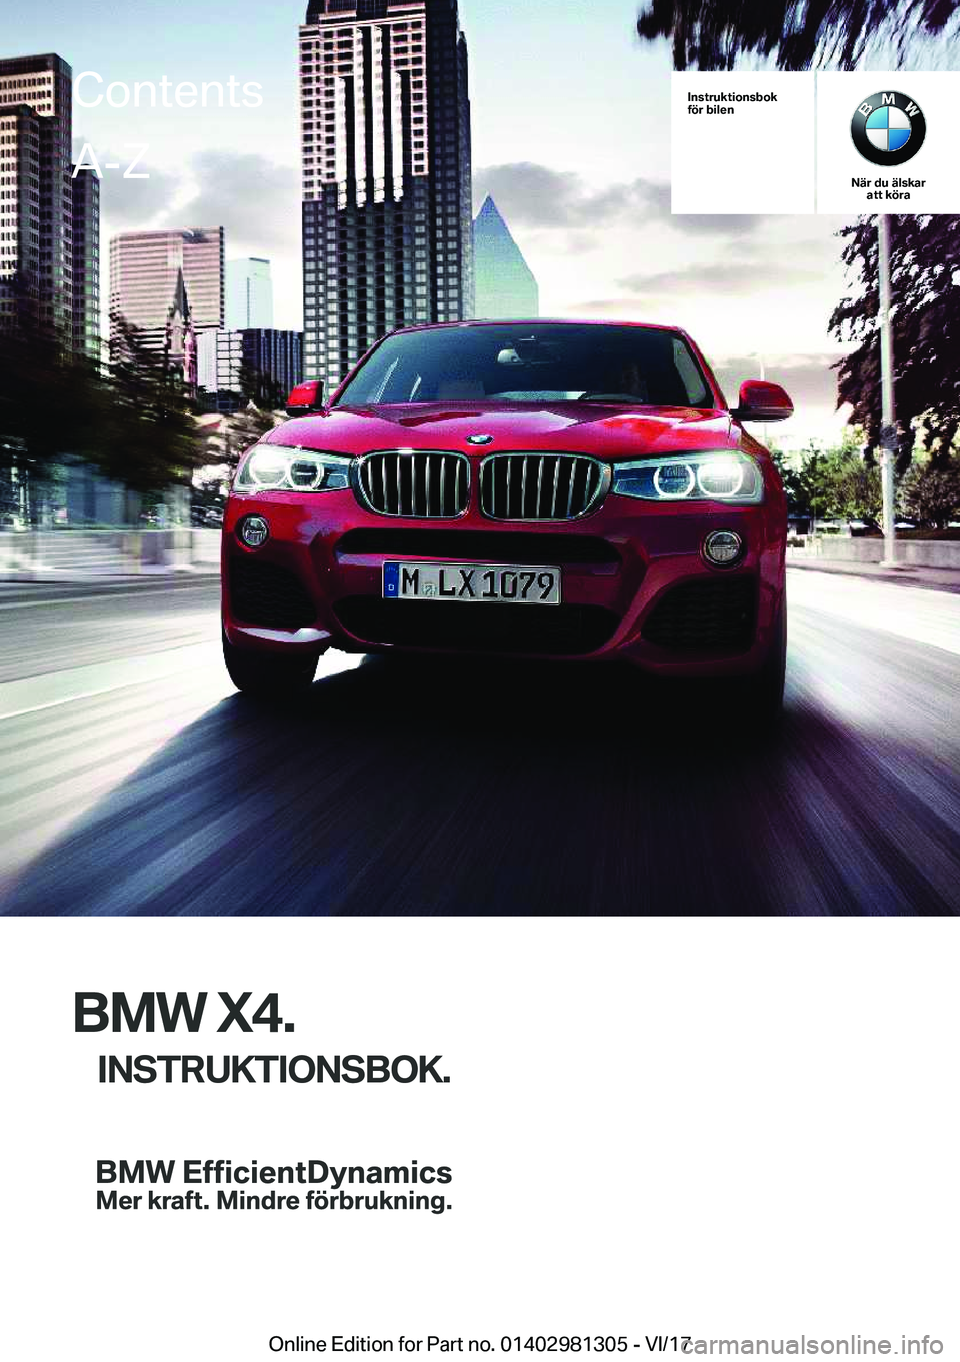 BMW X4 2018  InstruktionsbÖcker (in Swedish) �I�n�s�t�r�u�k�t�i�o�n�s�b�o�k
�f�